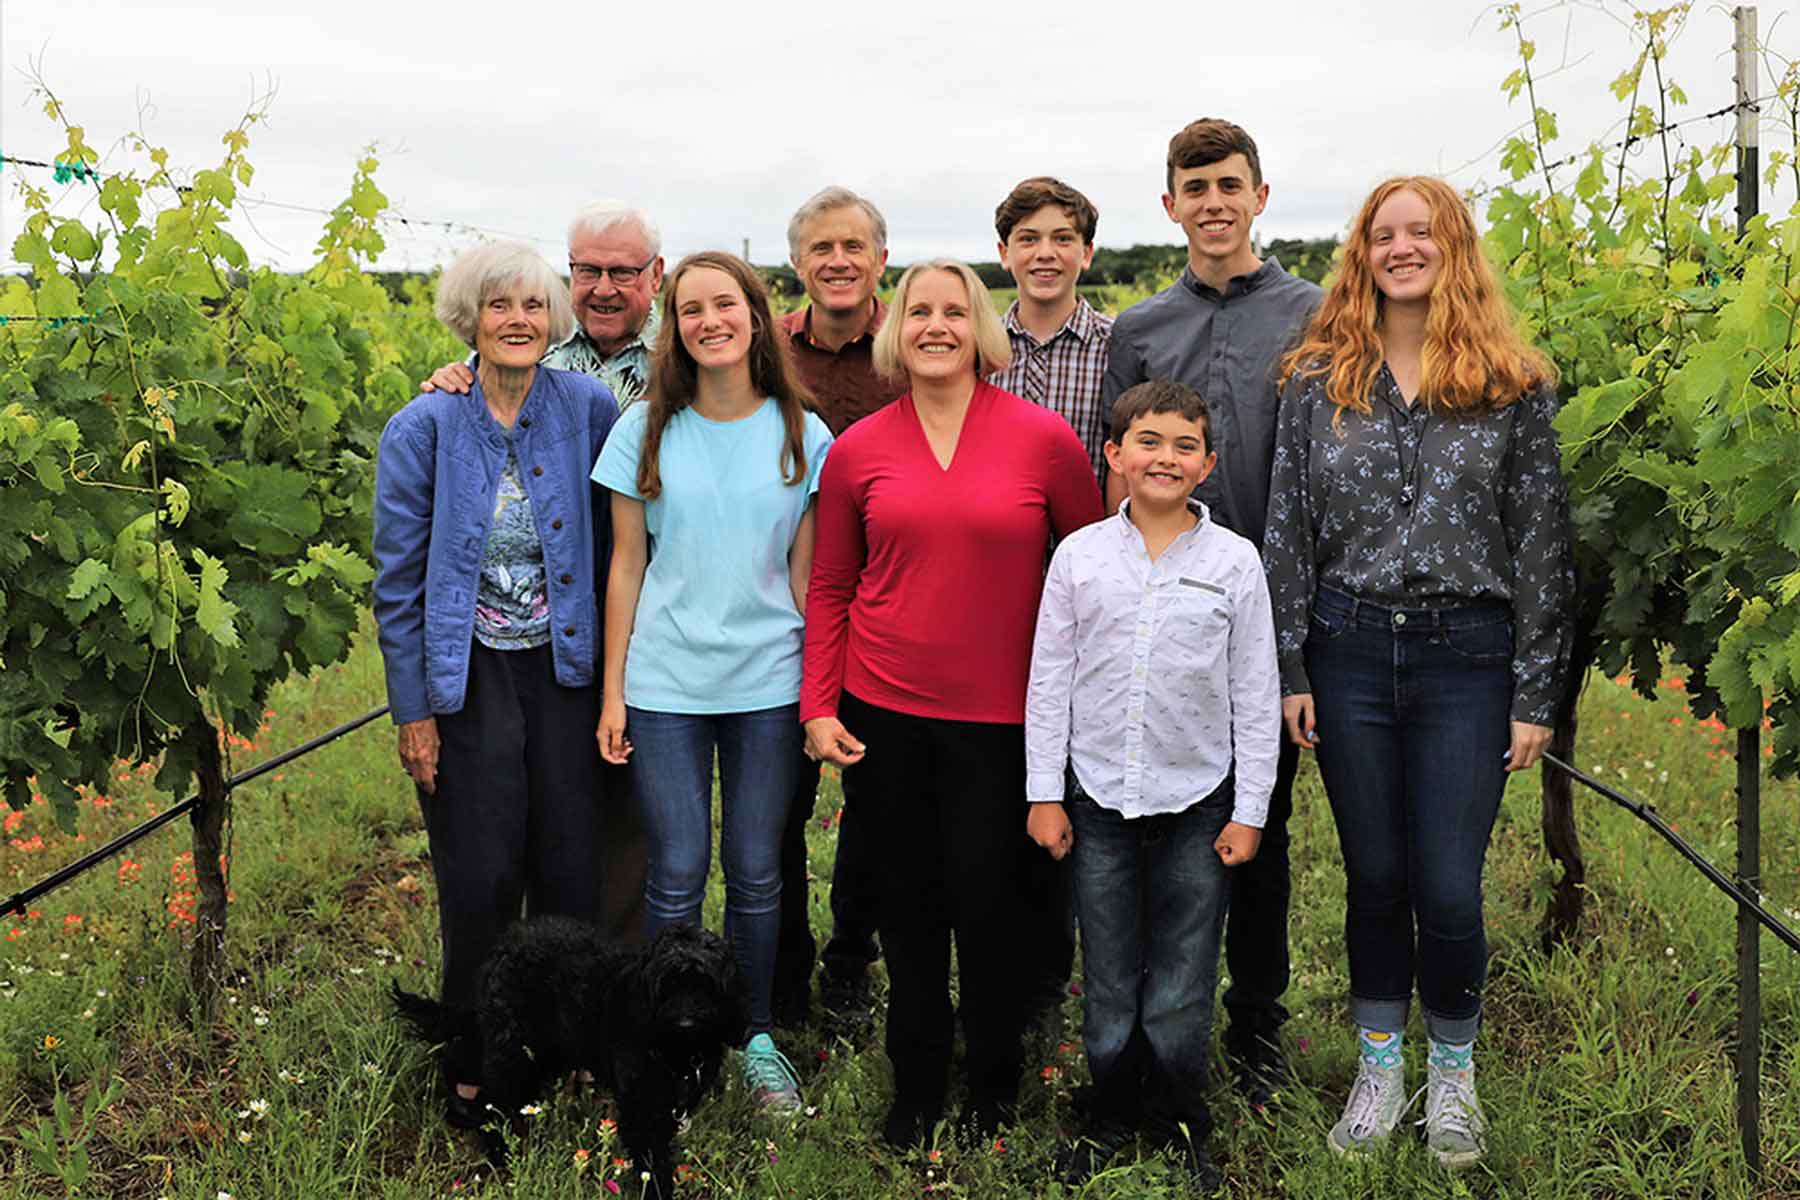 Kuhlken Family Photo in the vinyards